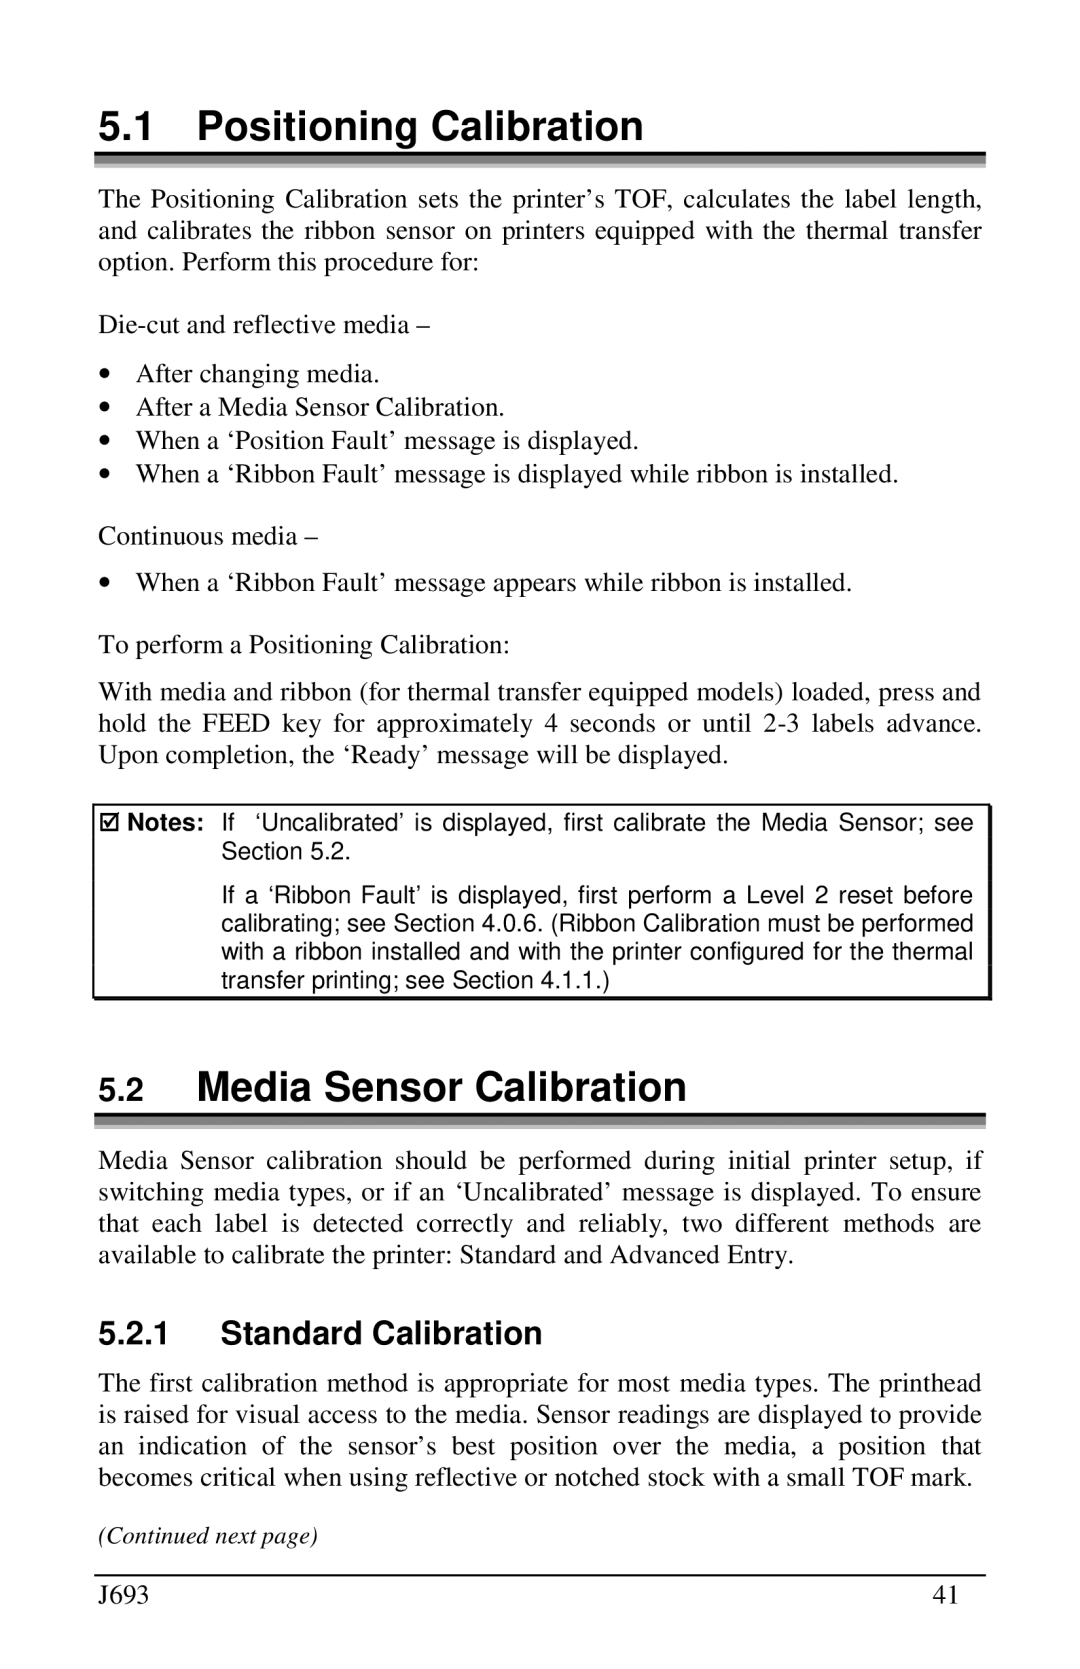 Pitney Bowes J693 manual Positioning Calibration, Media Sensor Calibration, Standard Calibration 